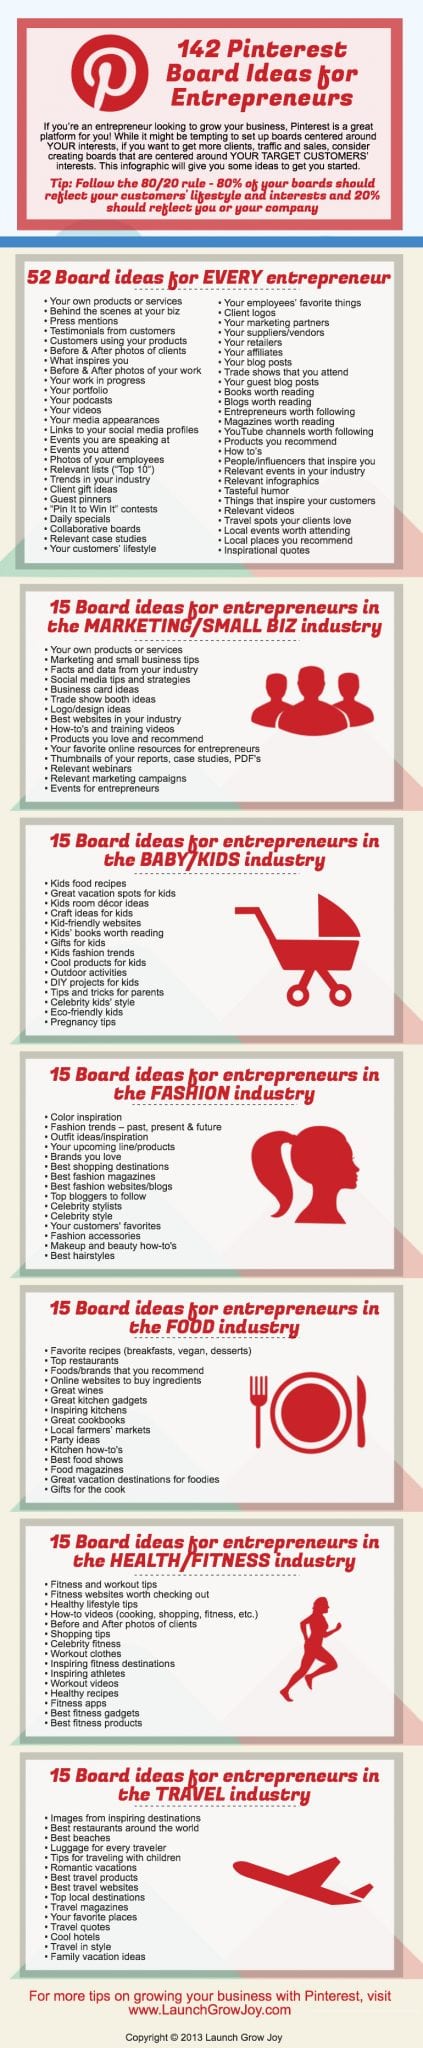 142-Pinterest-board-ideas-for-entrepreneurs